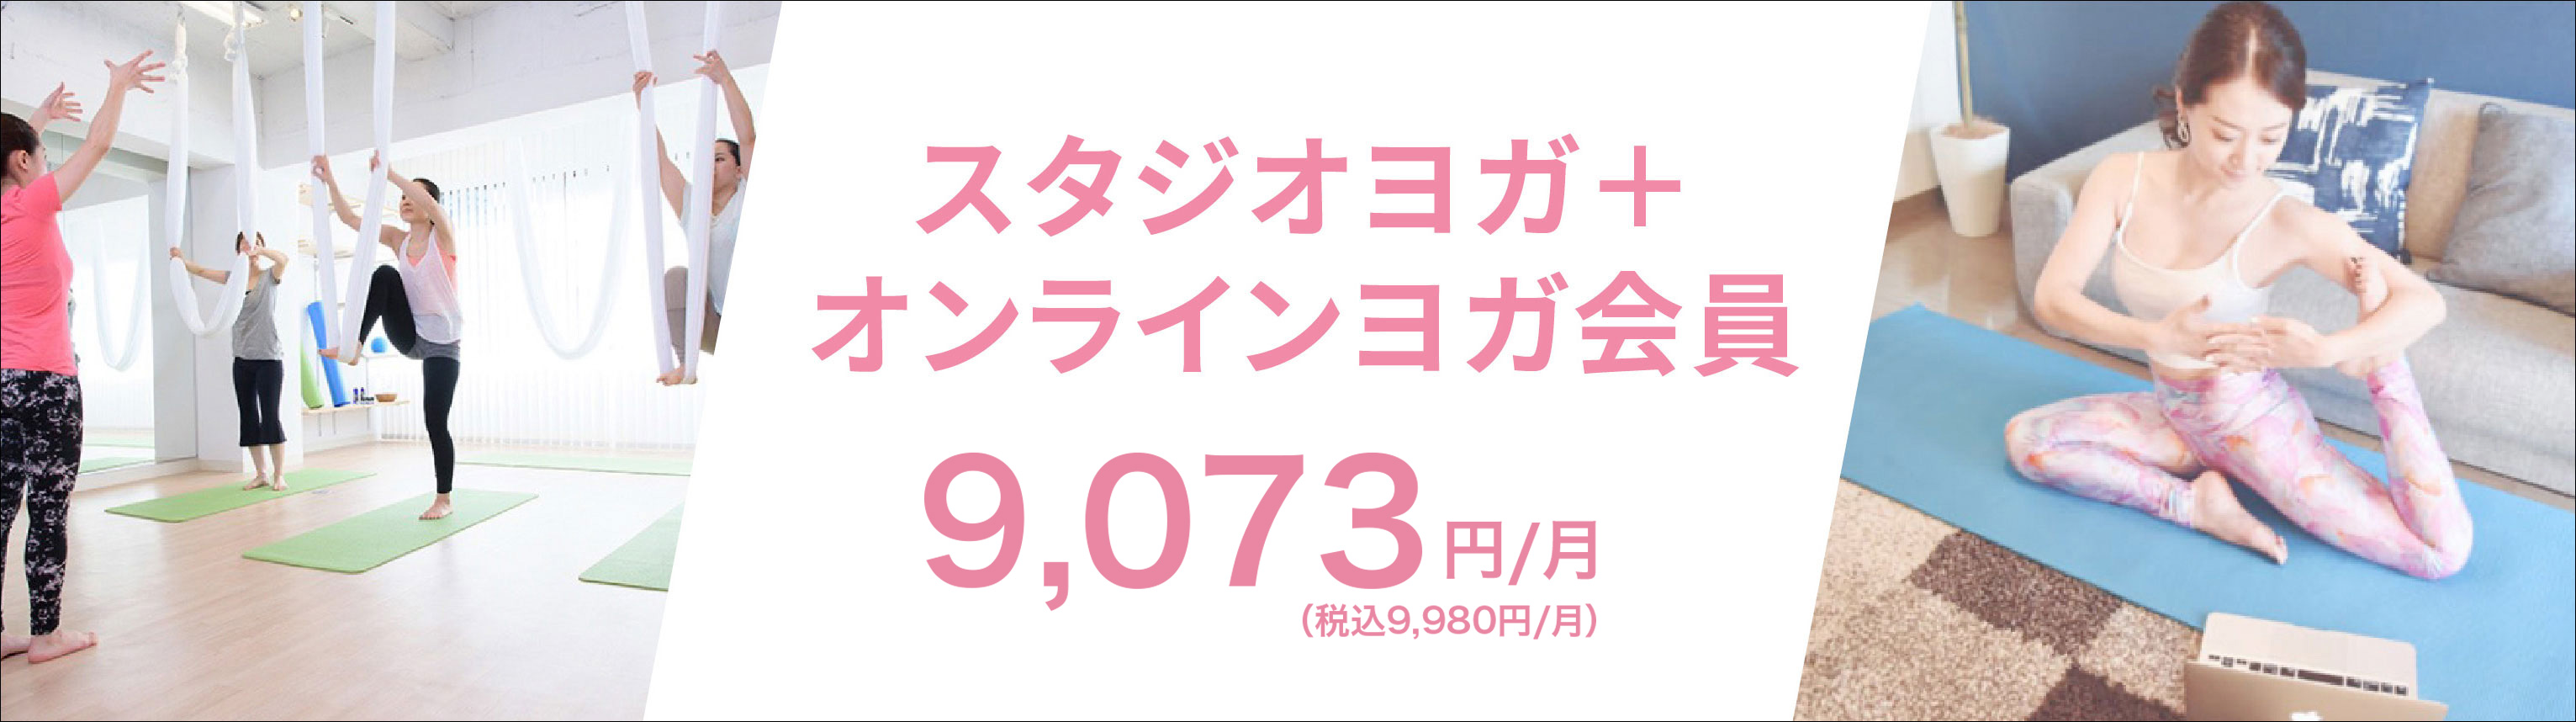 スタジオ＋オンラインヨガ会員9073円